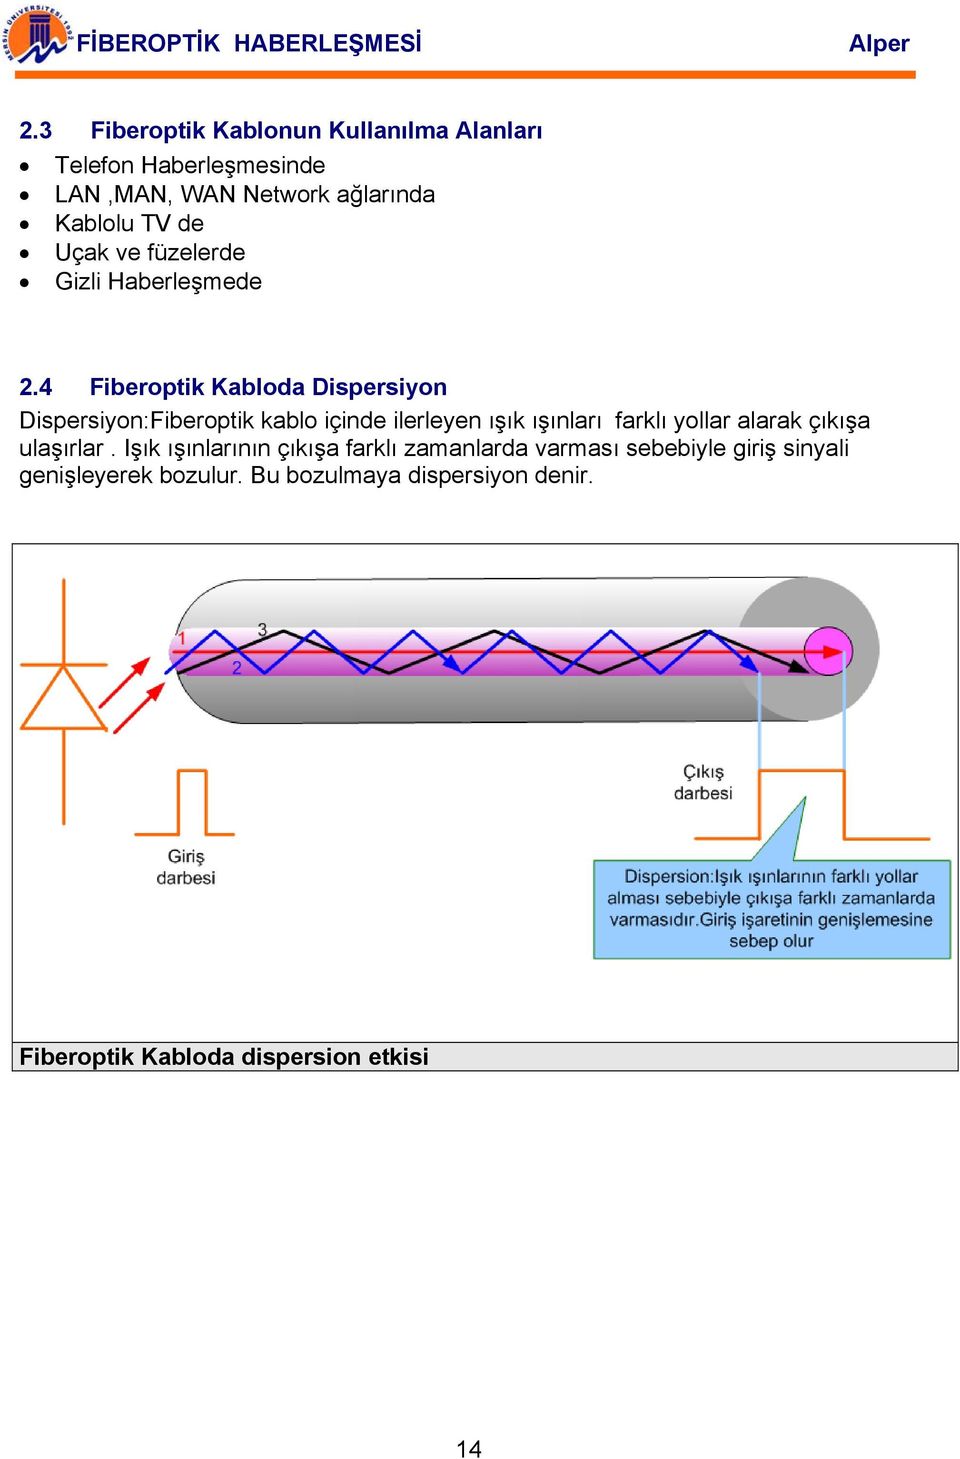 4 Fiberoptik Kabloda Dispersiyon Dispersiyon:Fiberoptik kablo içinde ilerleyen ışık ışınları farklı yollar